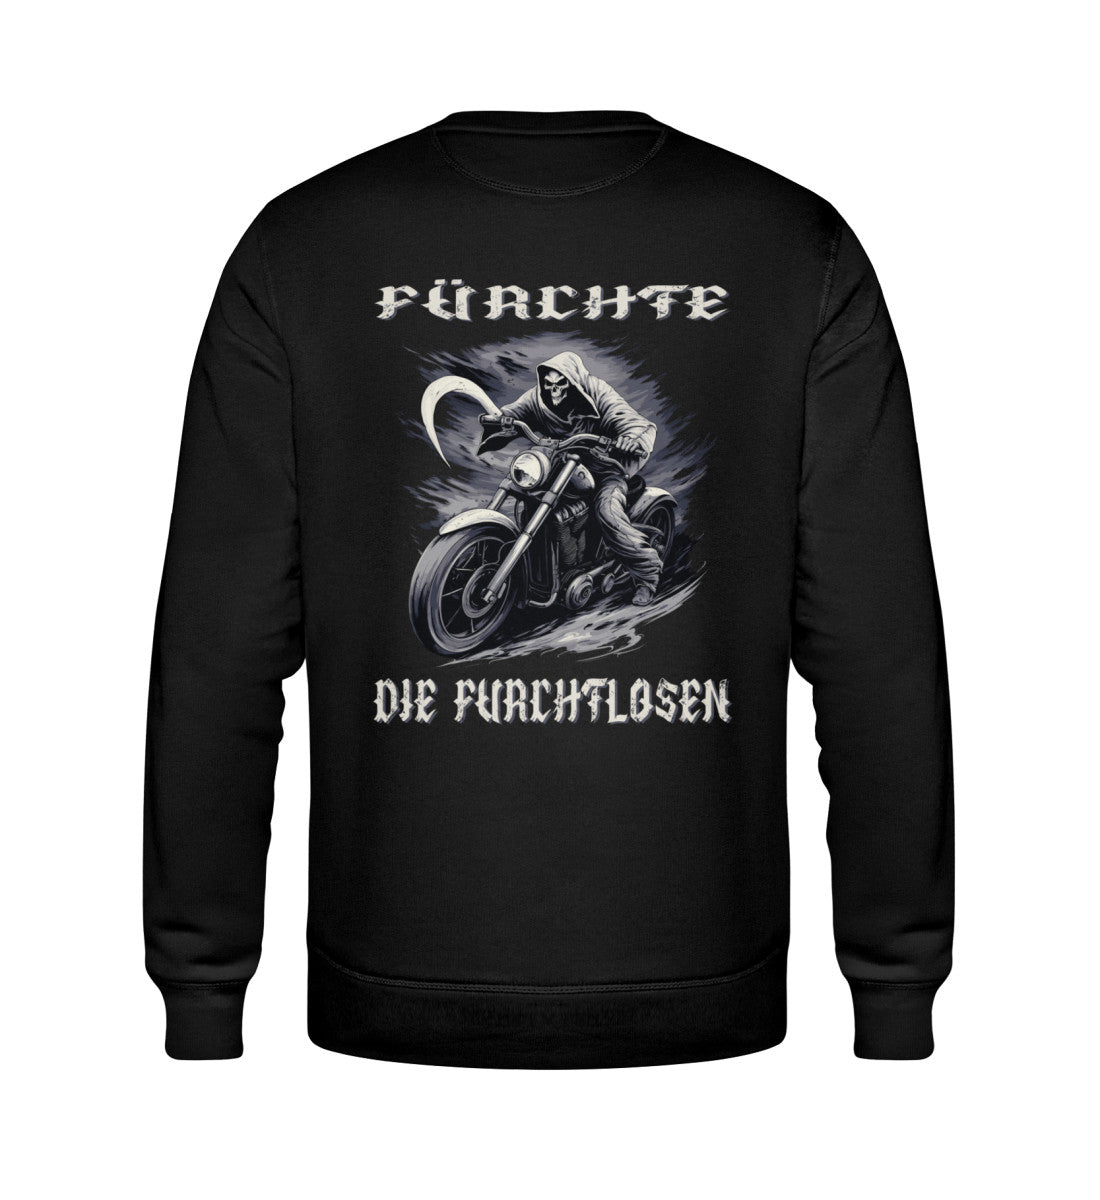 Ein Biker Sweatshirt für Motorradfahrer von Wingbikers mit dem Aufdruck, Sensemann - Fürchte die Furchtlosen, mit Back Print - in schwarz.